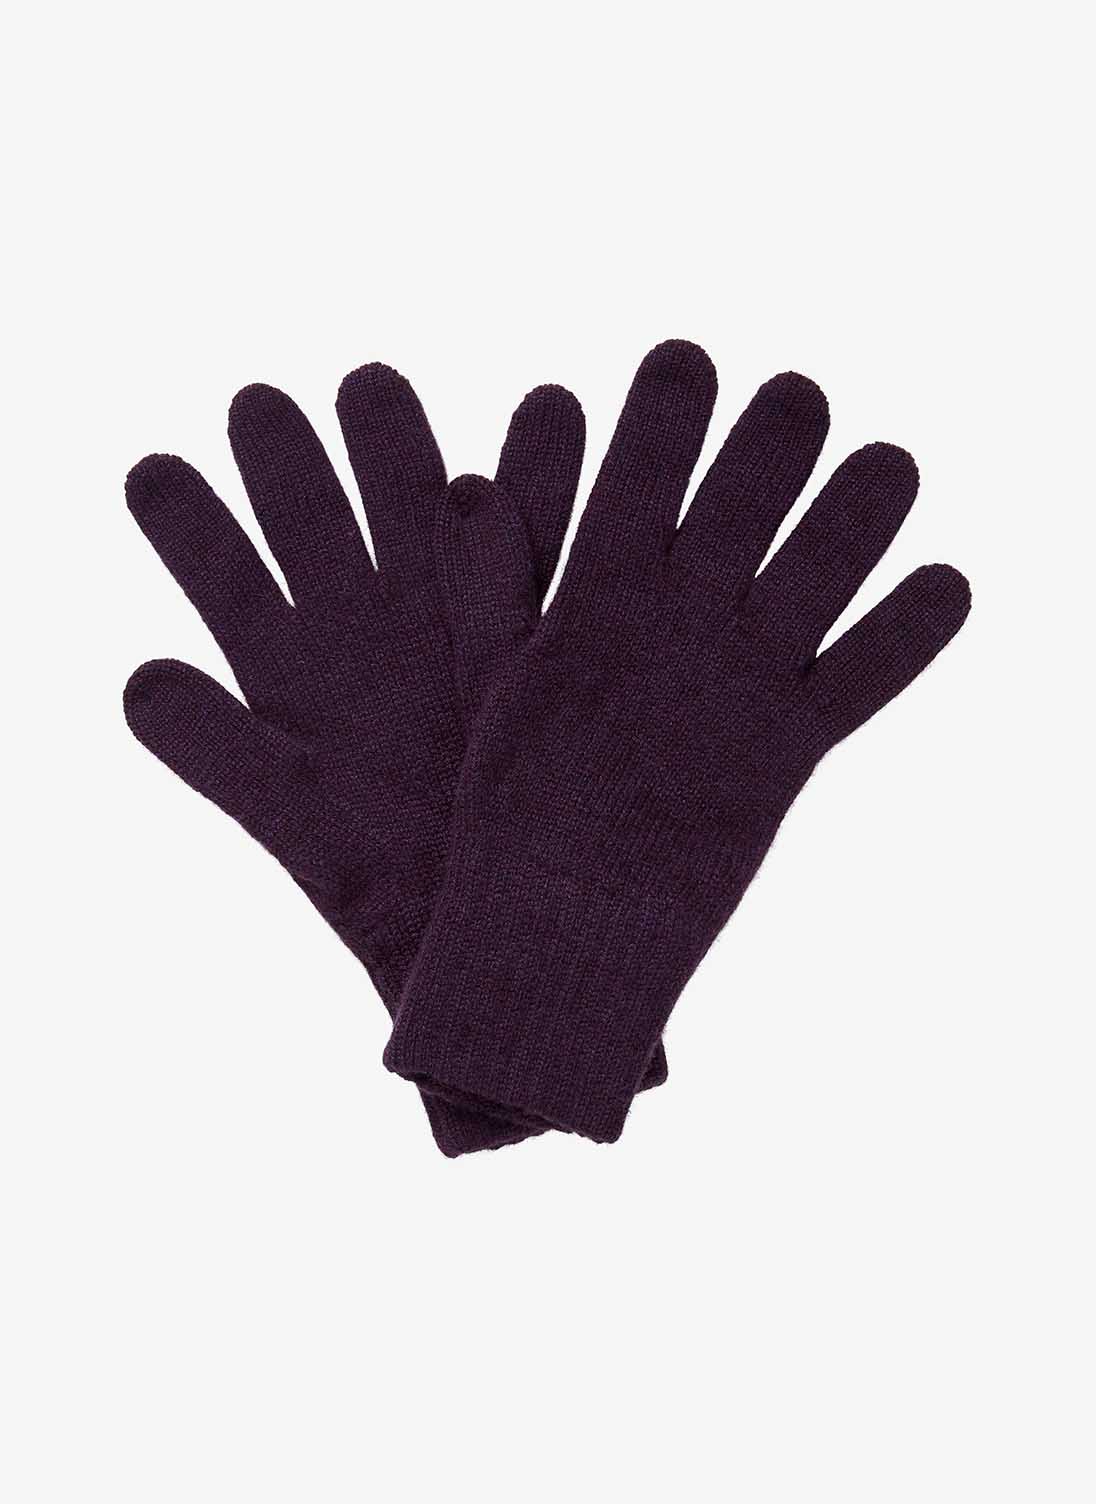 Women's Cashmere Gloves Plum